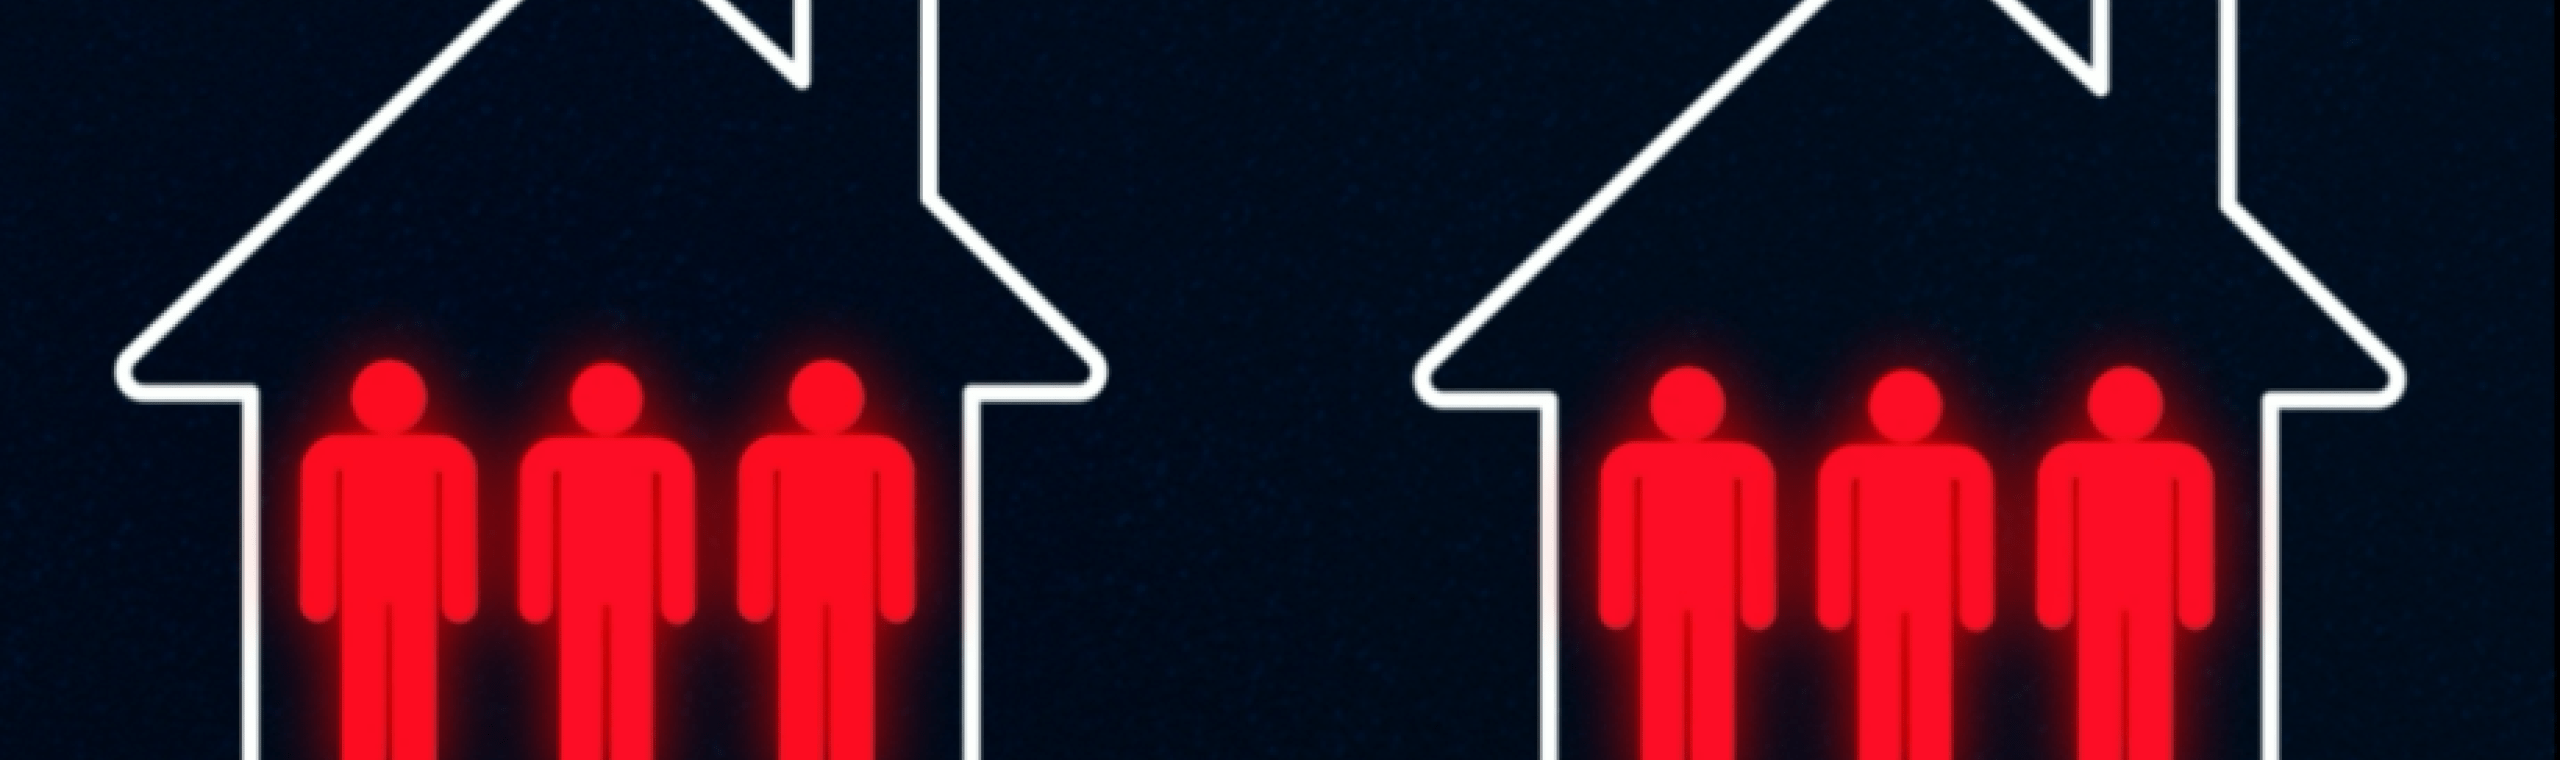 Schematische weergave van drie huizen, waarin per huis drie roodgekleurde personen staan